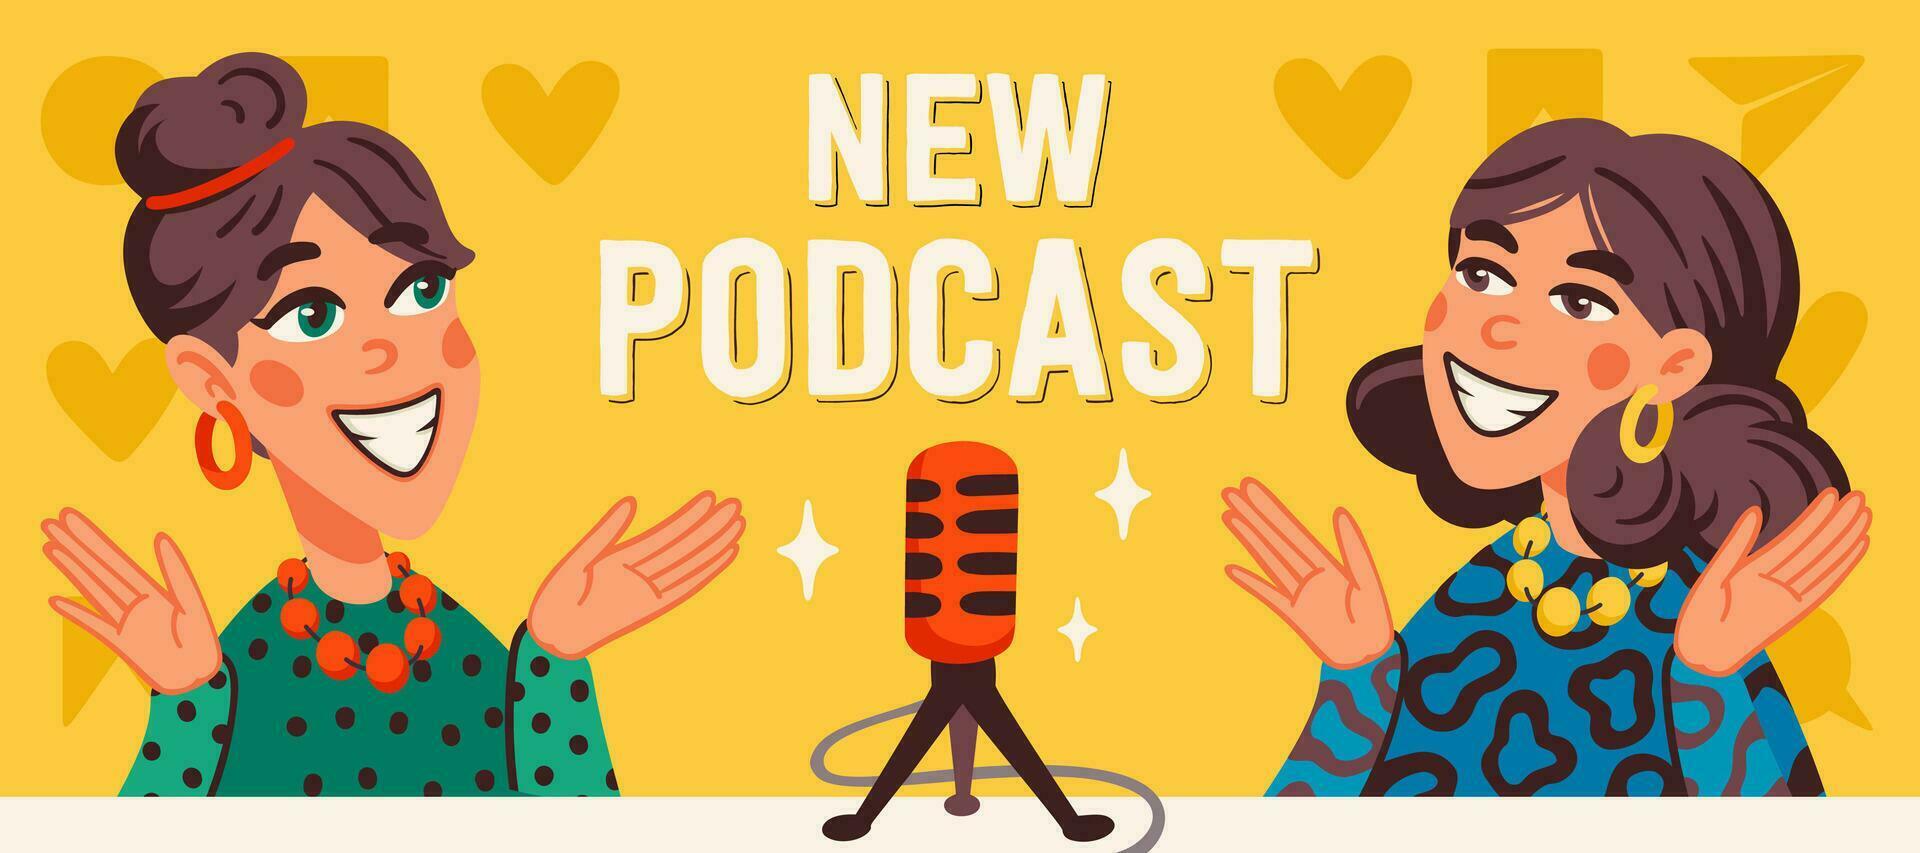 podcast cobrir conceito. dois alegre meninas gravação audio podcast ou conectados mostrar vetor plano ilustração.